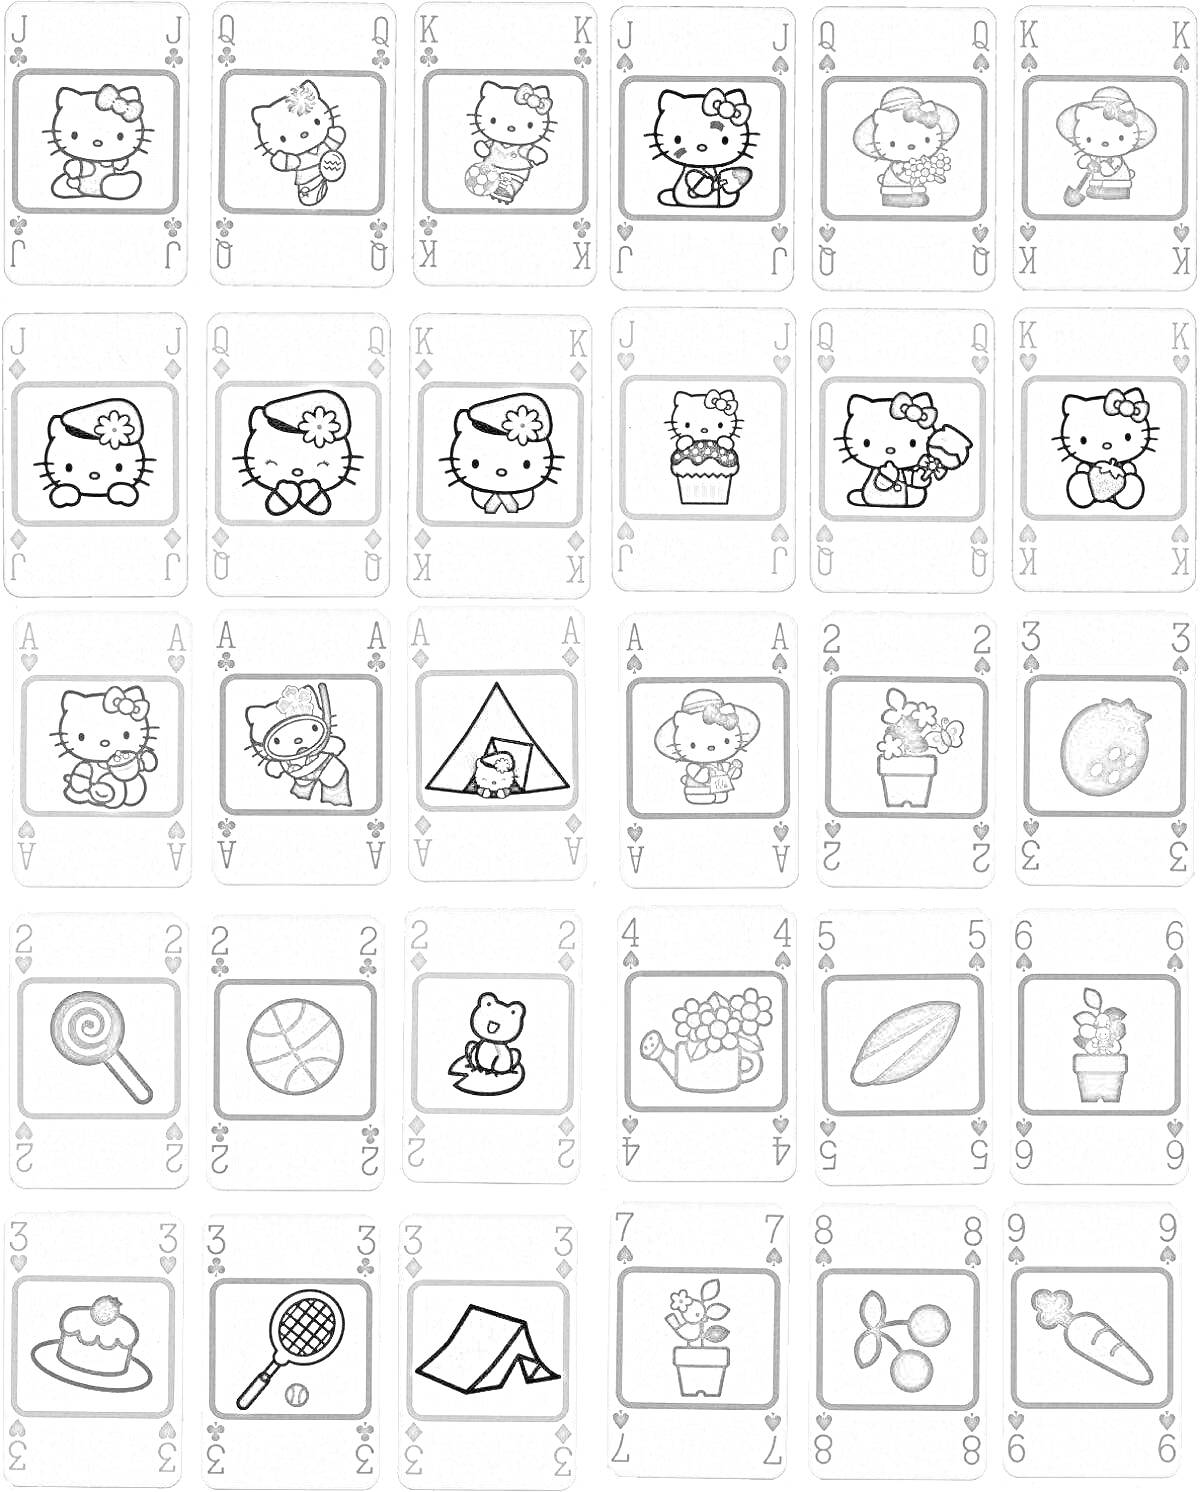 Карточки Уно с изображениями Hello Kitty и разными предметами, включая игрушки, палатки, цветы, сладости, и спортивные предметы